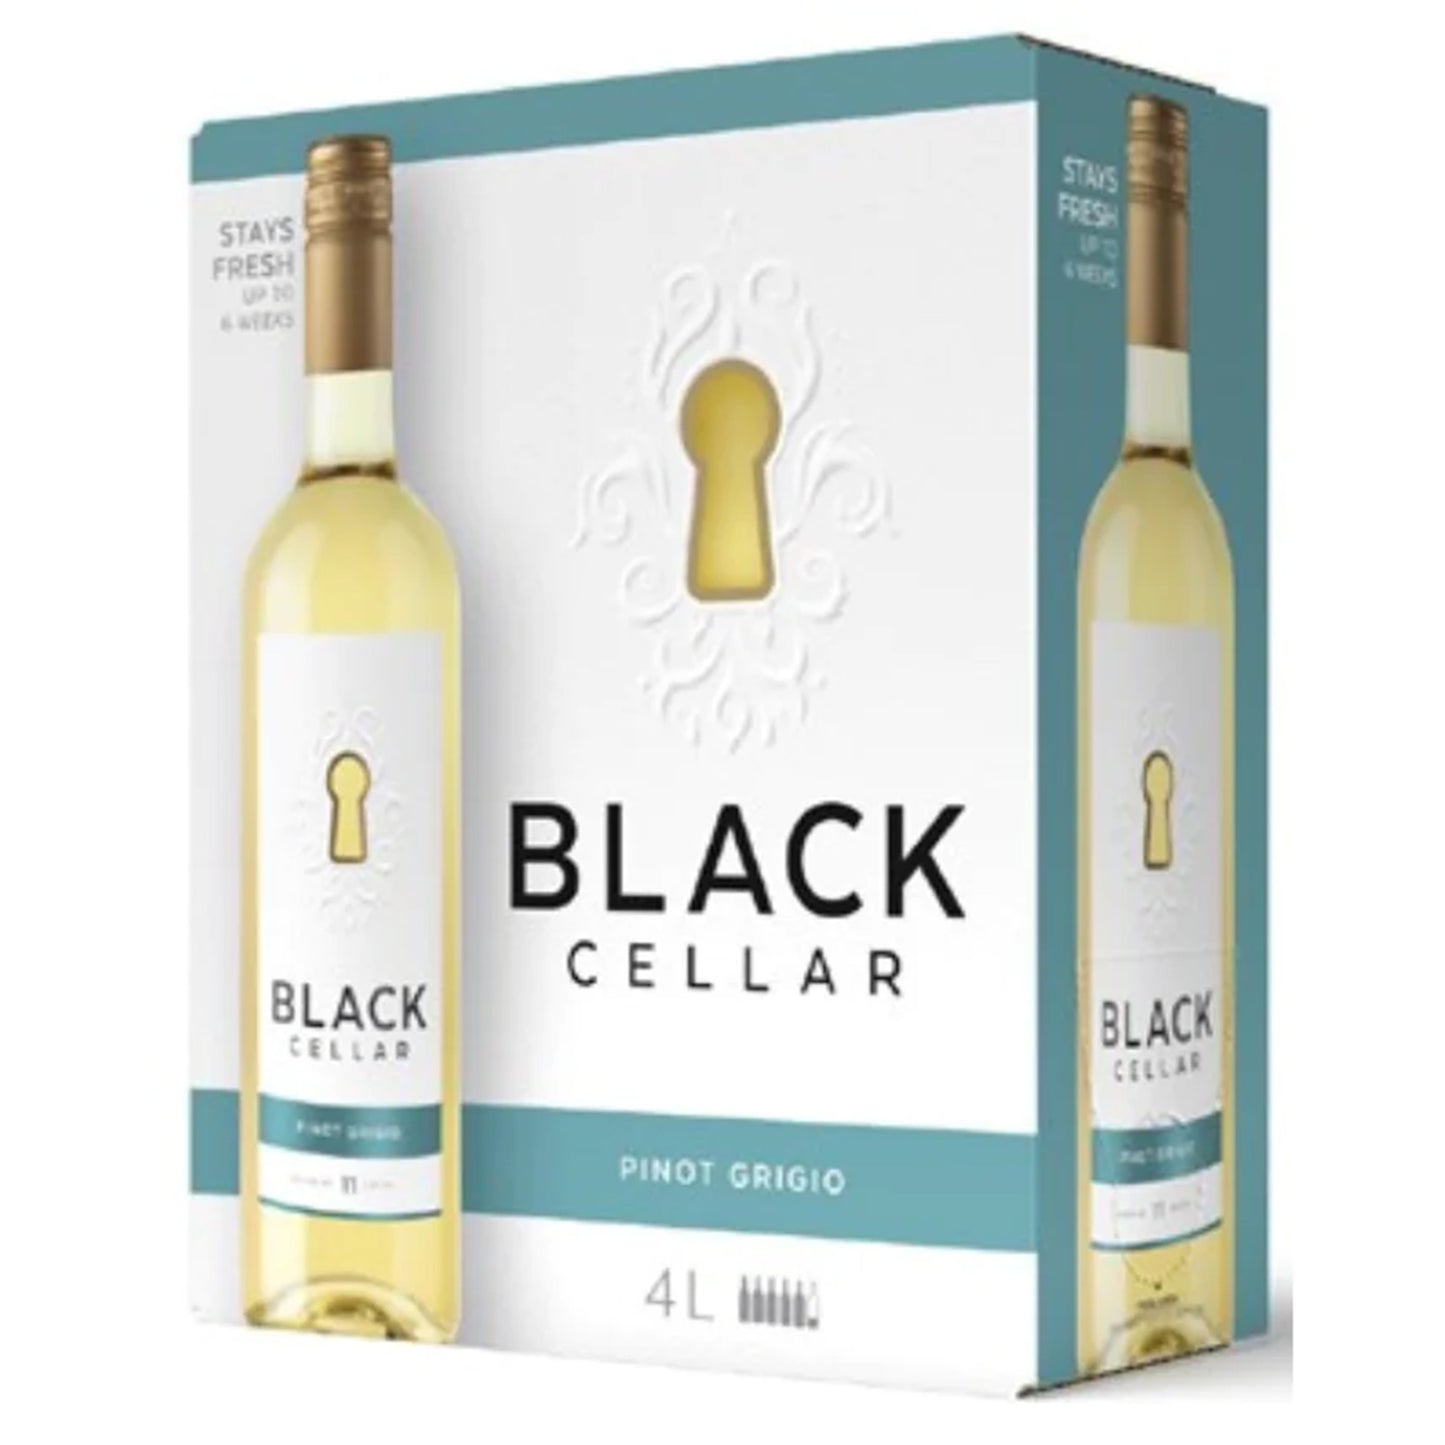 Black Cellars Pinot Grigio